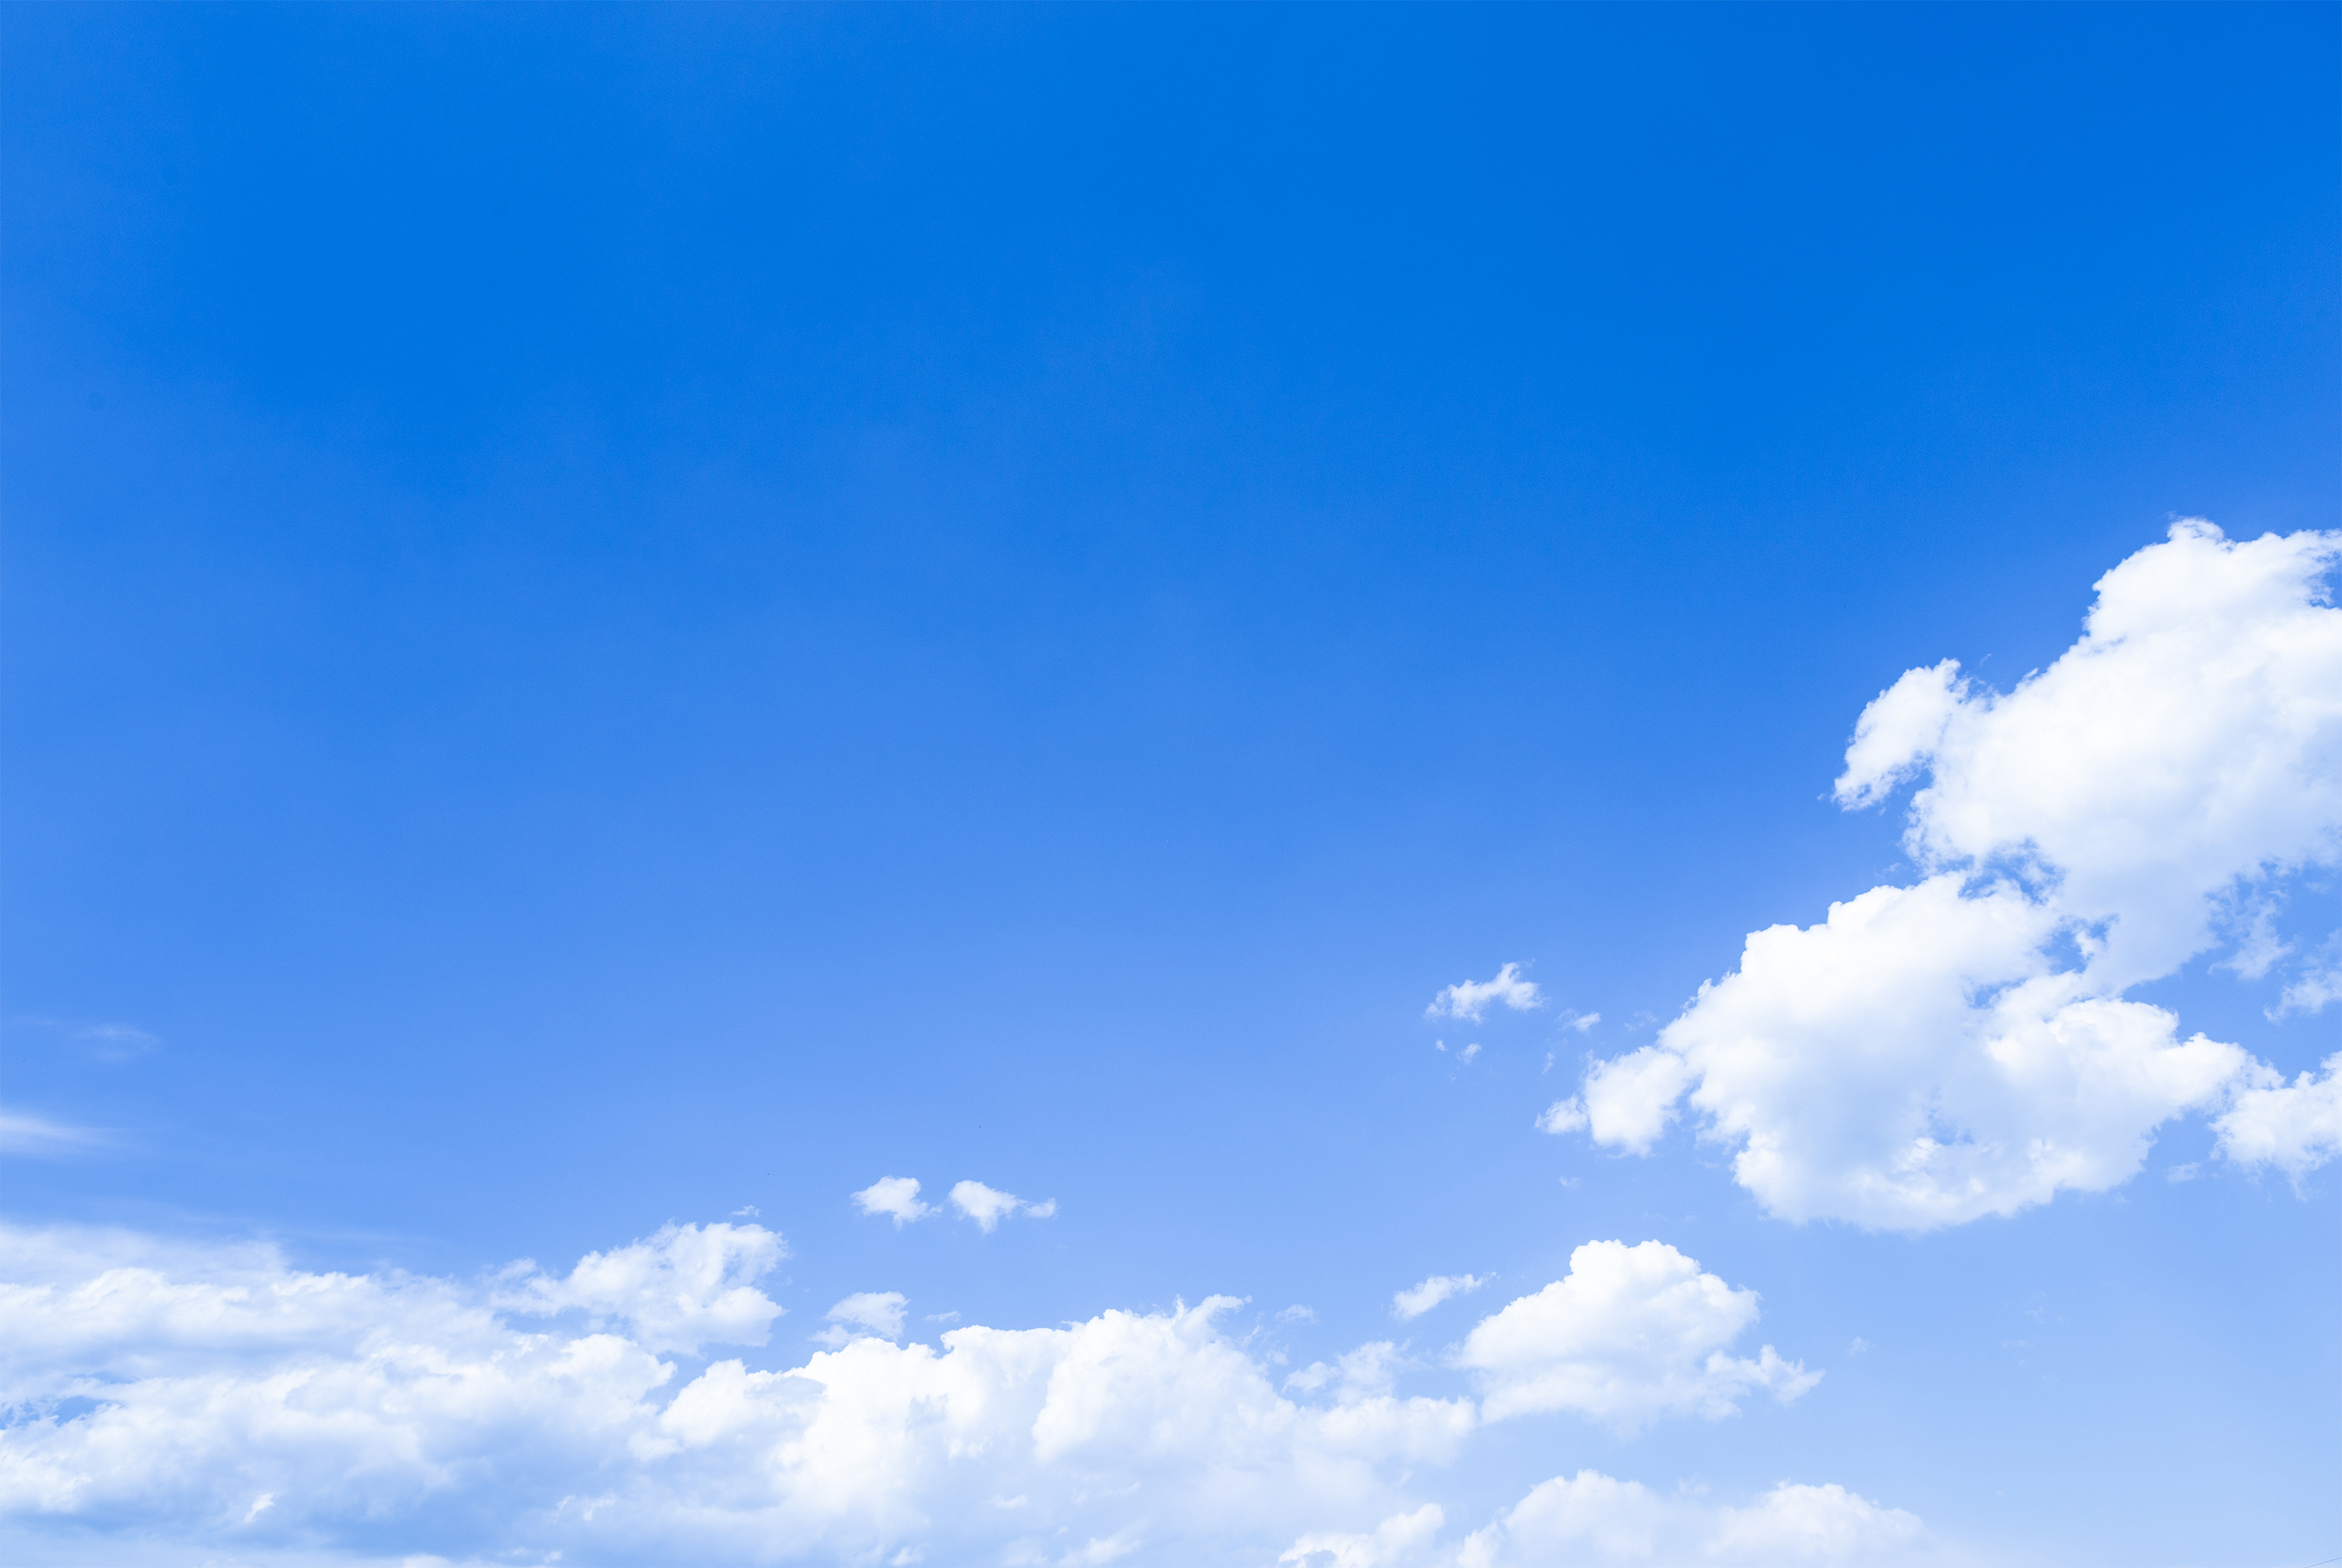 青空と雲07 無料の高画質フリー写真素材 イメージズラボ